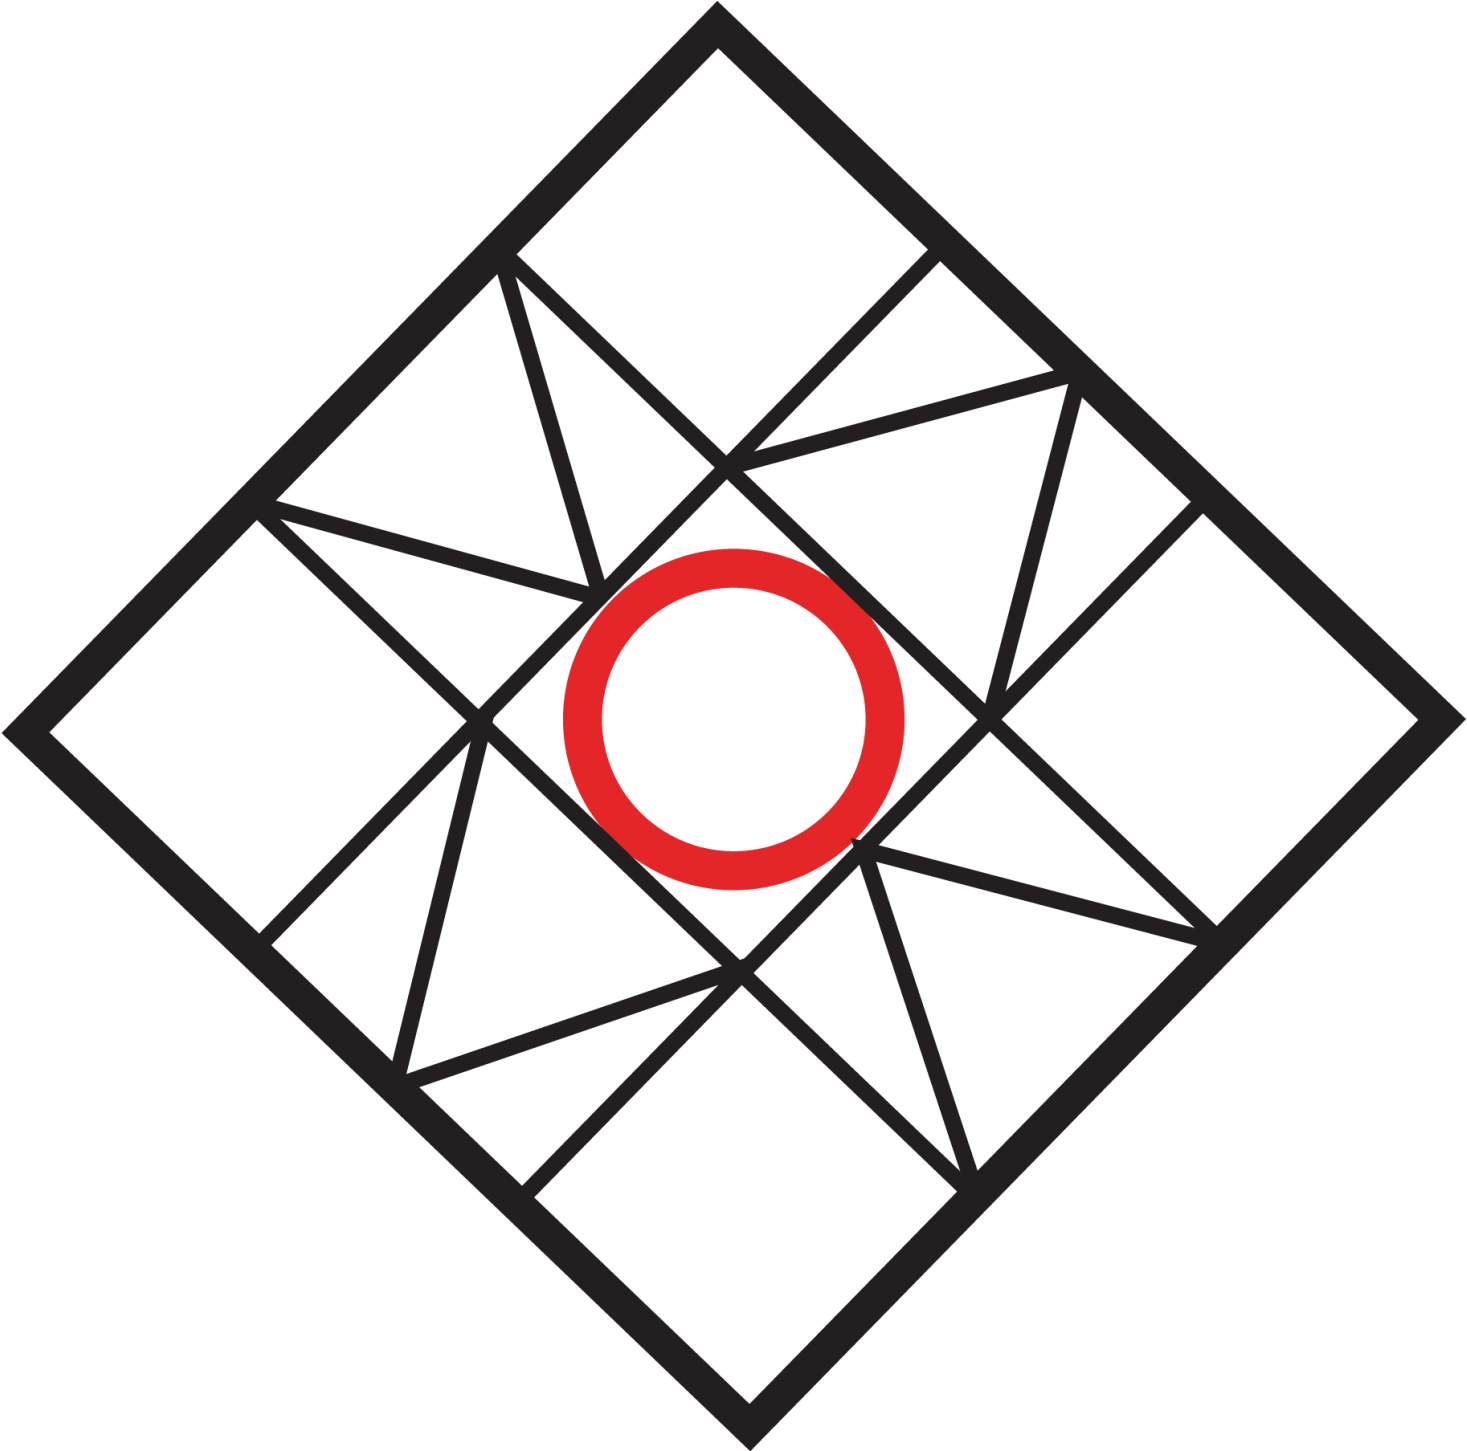 Nomas - Philau - National Organization Of Minority Architecture Students (1500x1450)